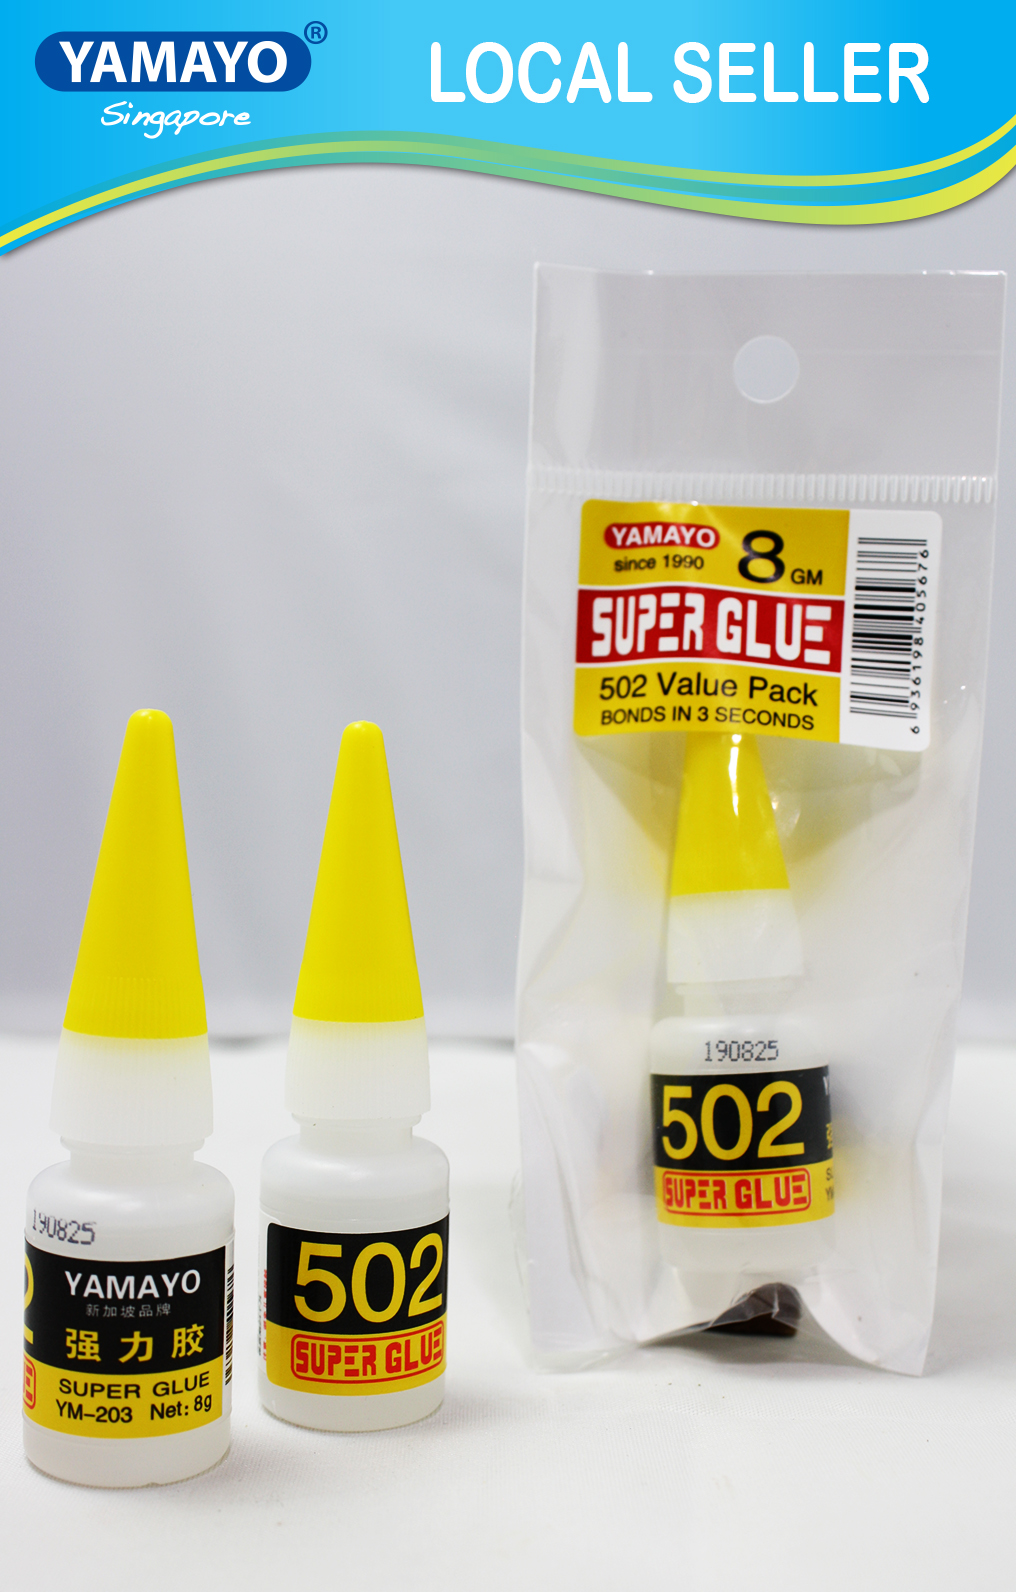 YAMAYO SUPER GLUE 502(ym-11) | Lazada Singapore